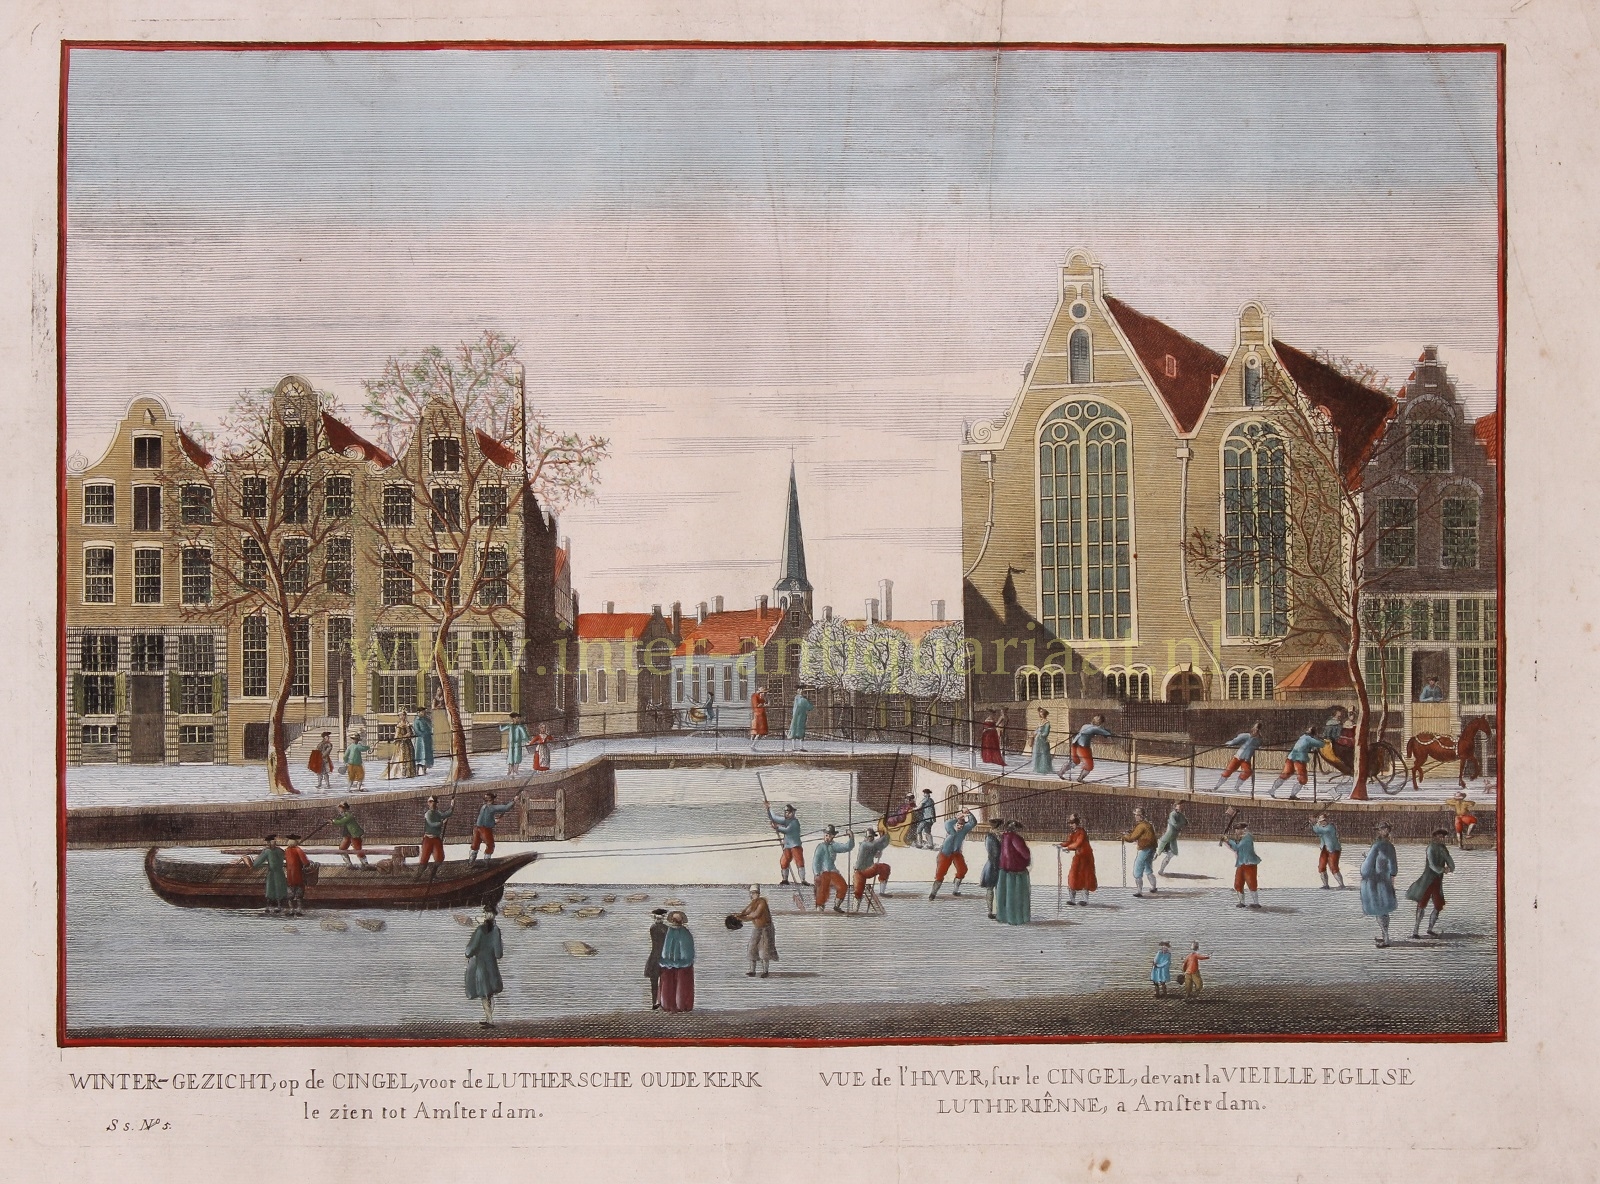 Schouten-- naar Herman - Amsterdam, winter on the Singel canal - after Herman Schouten, c. 1783